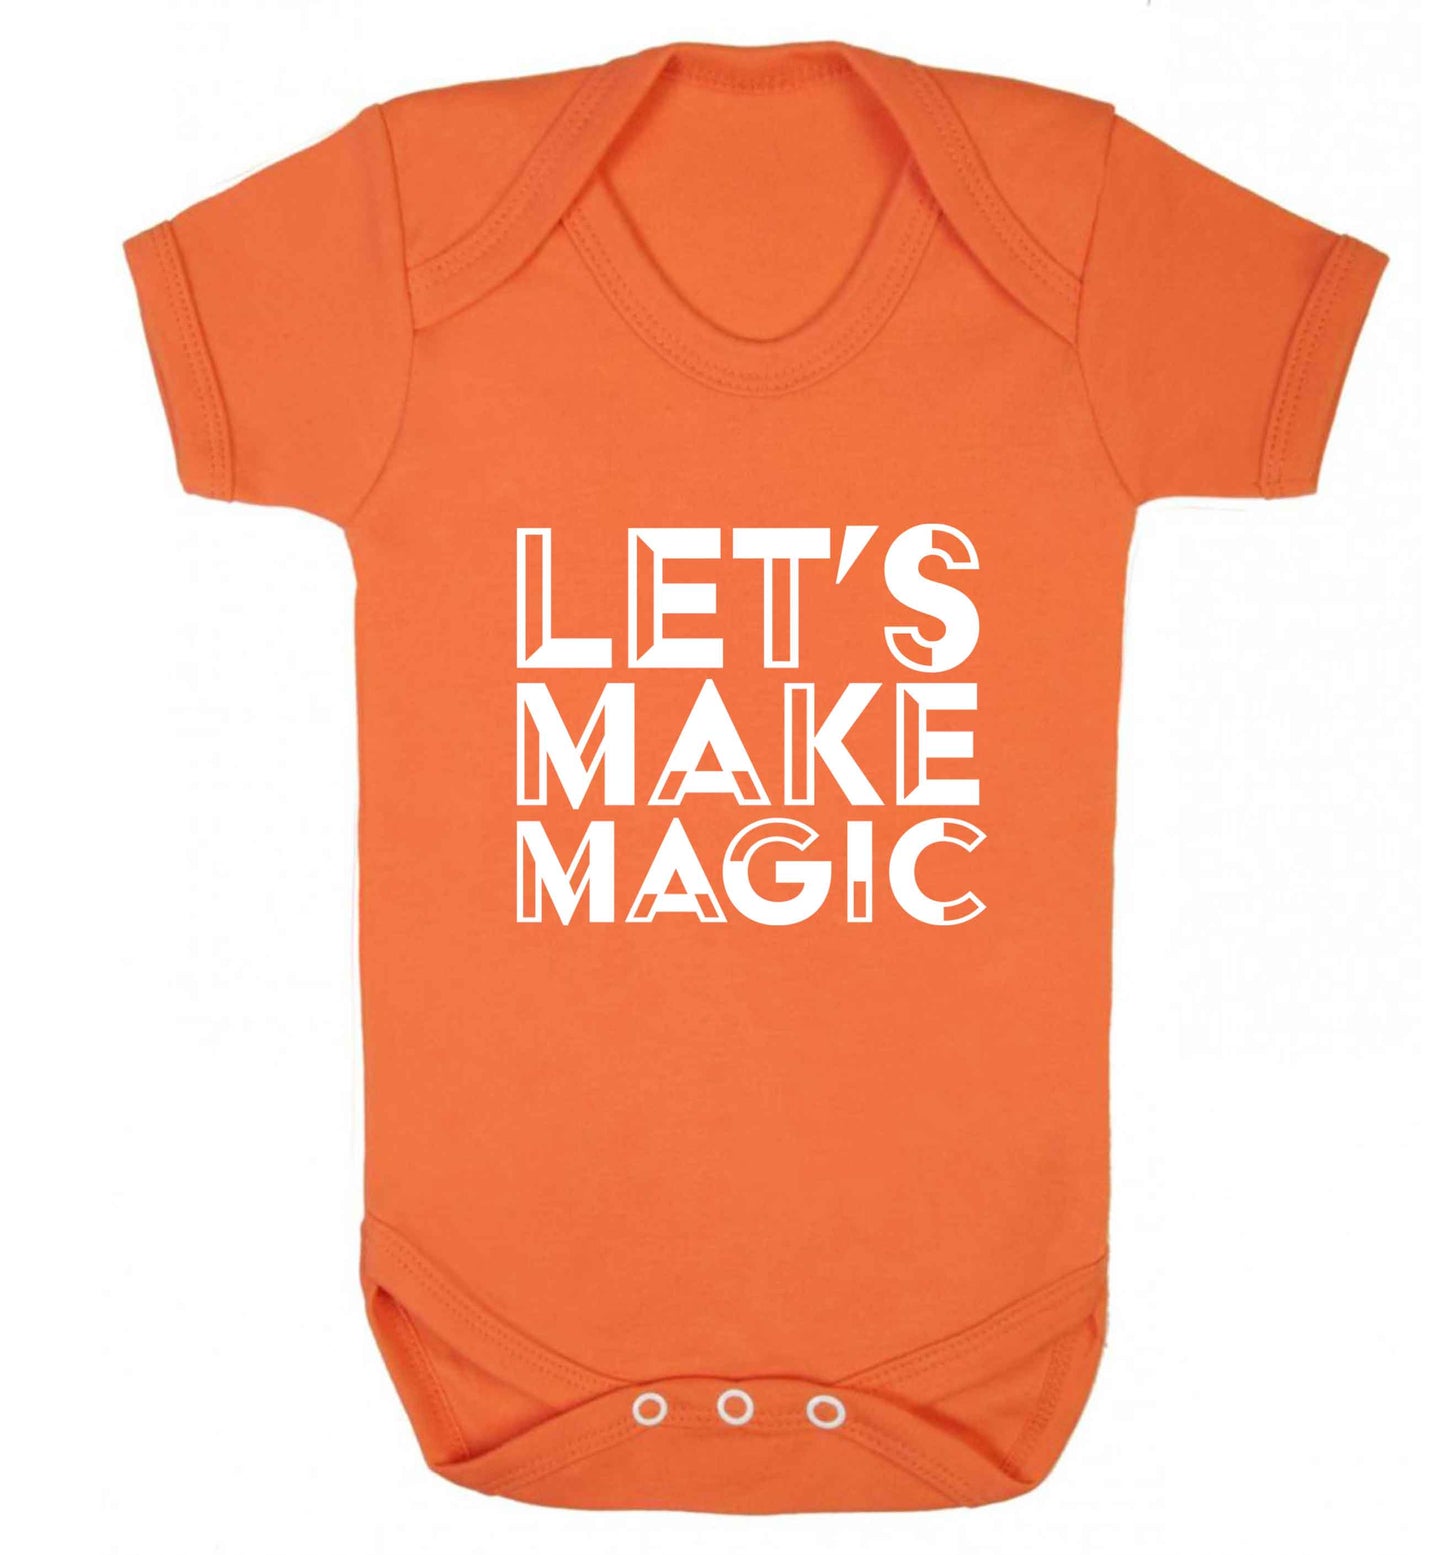 Let's make magic baby vest orange 18-24 months